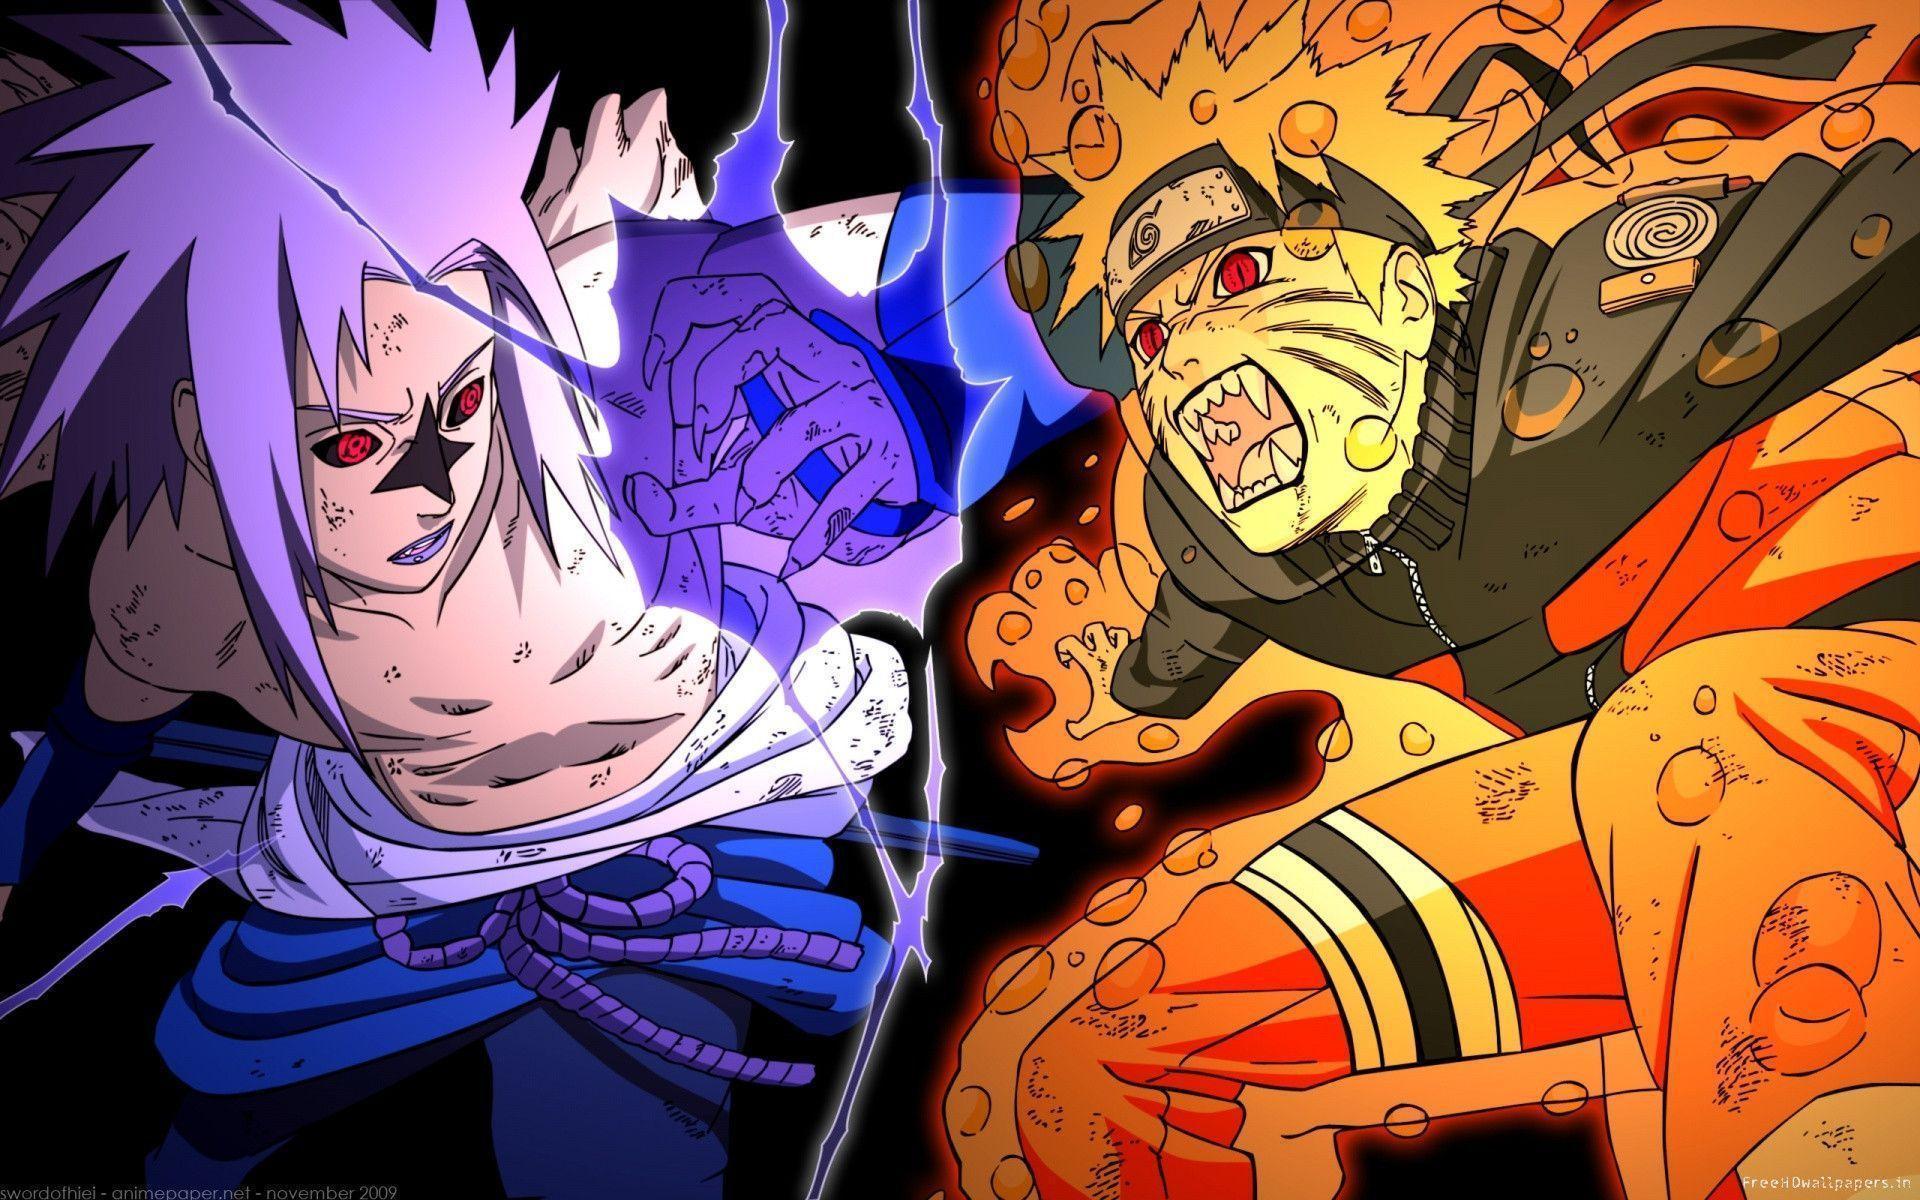 Naruto Shippuden: Hãy xem Naruto Shippuden, chương trình nối tiếp câu chuyện về Naruto, để tìm hiểu về cuộc phiêu lưu mới nhất của Naruto và nhóm bạn của cậu. Bạn sẽ được tận hưởng một loạt các trận đấu đầy hồi hộp và những giây phút cảm động.